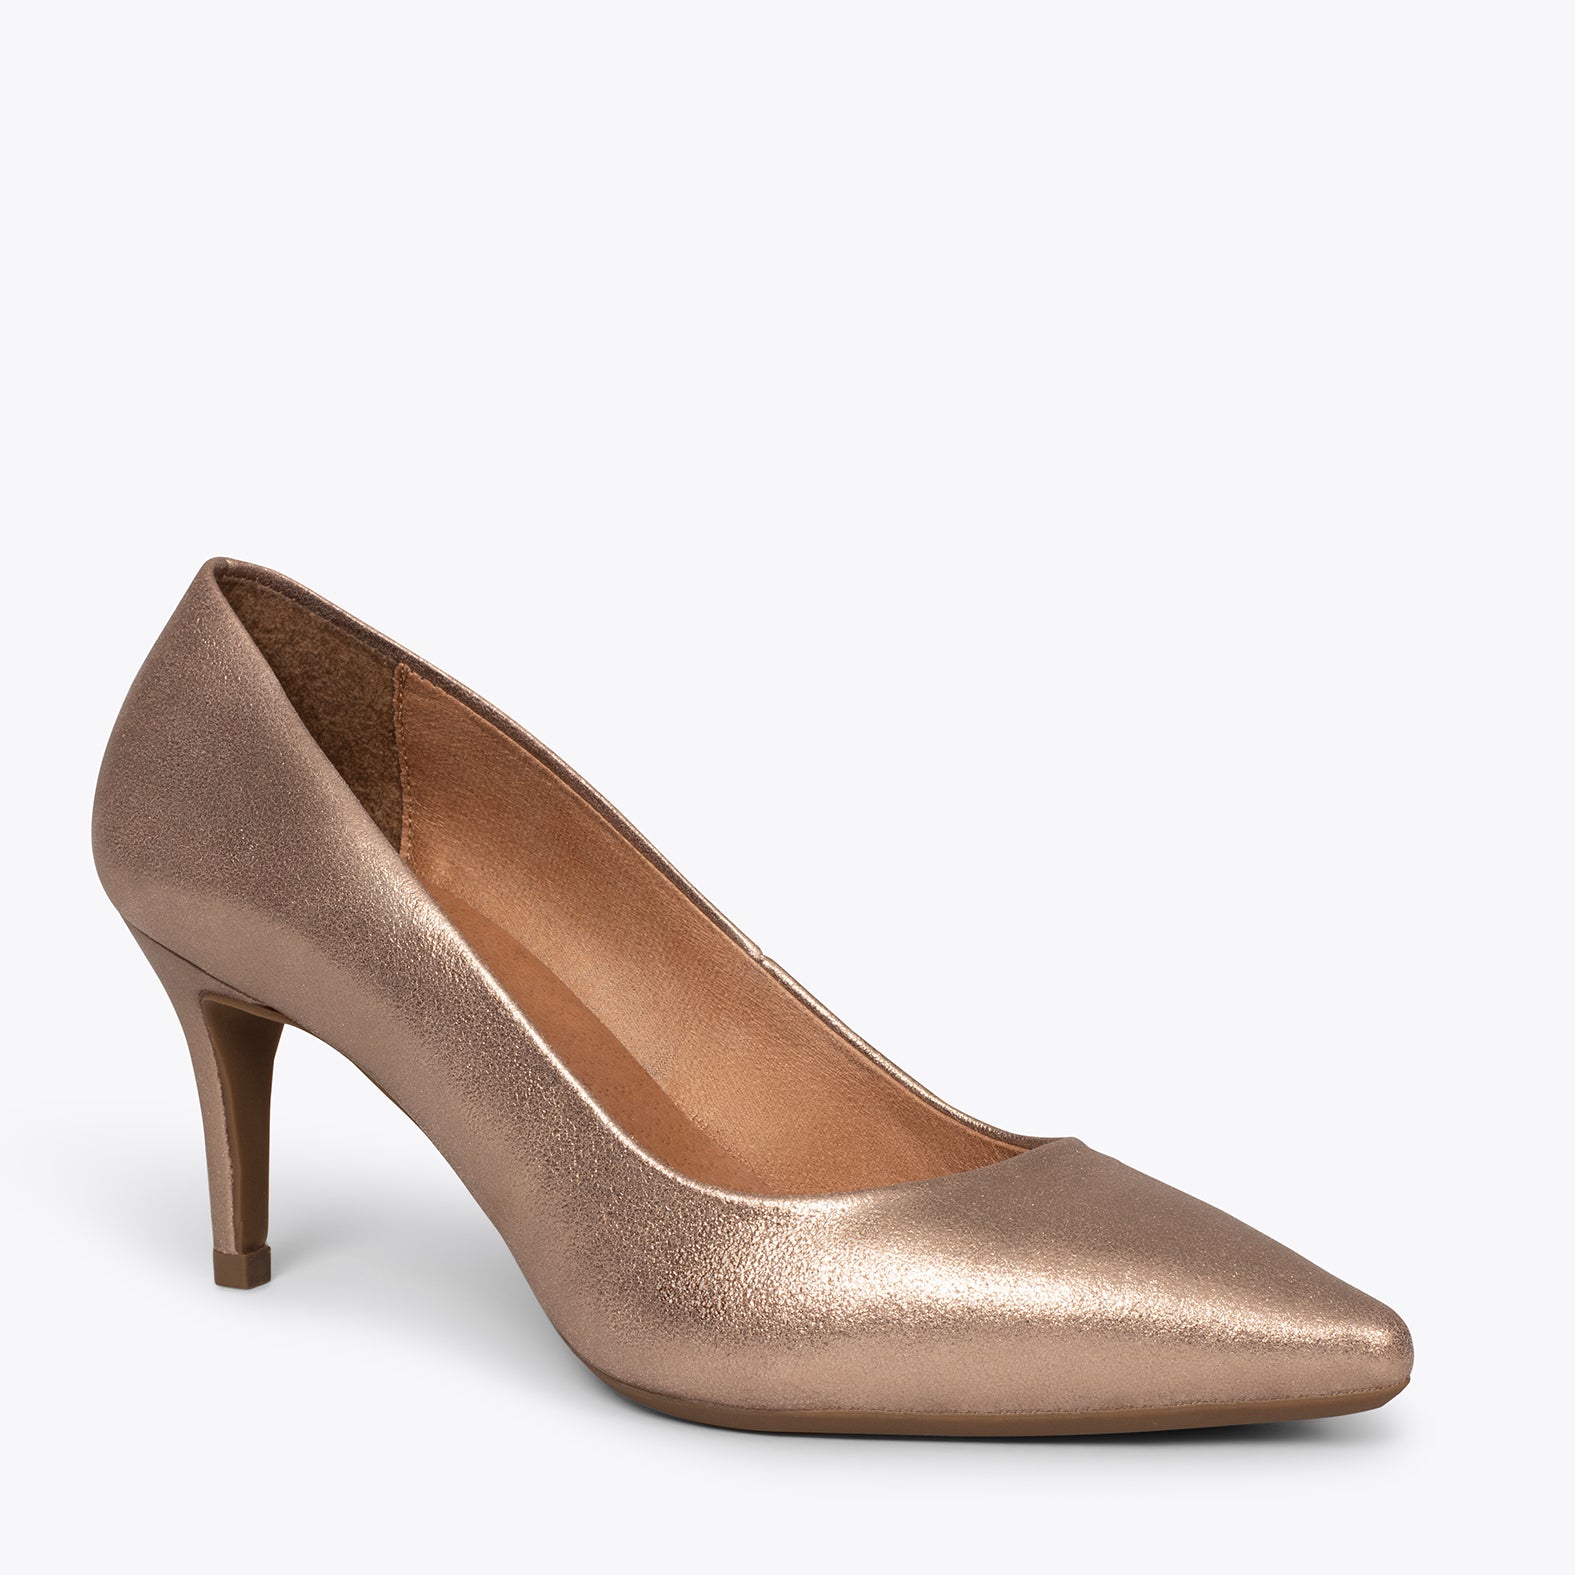 STILETTO – GOLD stiletto mid heel